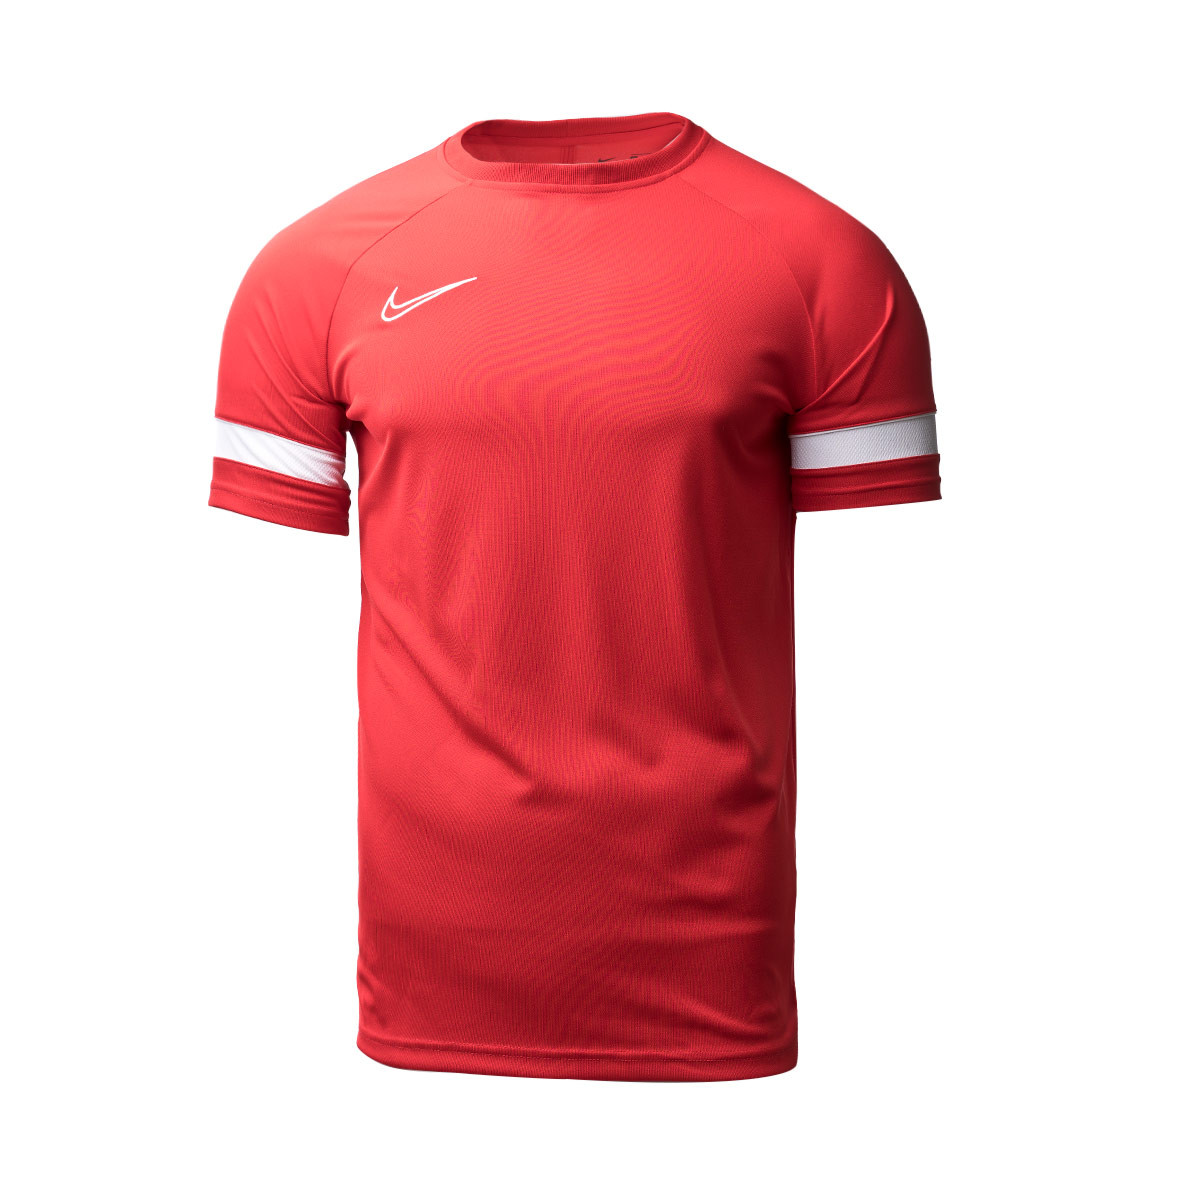 Camiseta Nike Academy 21 Training m/c University Red-White - Emotion